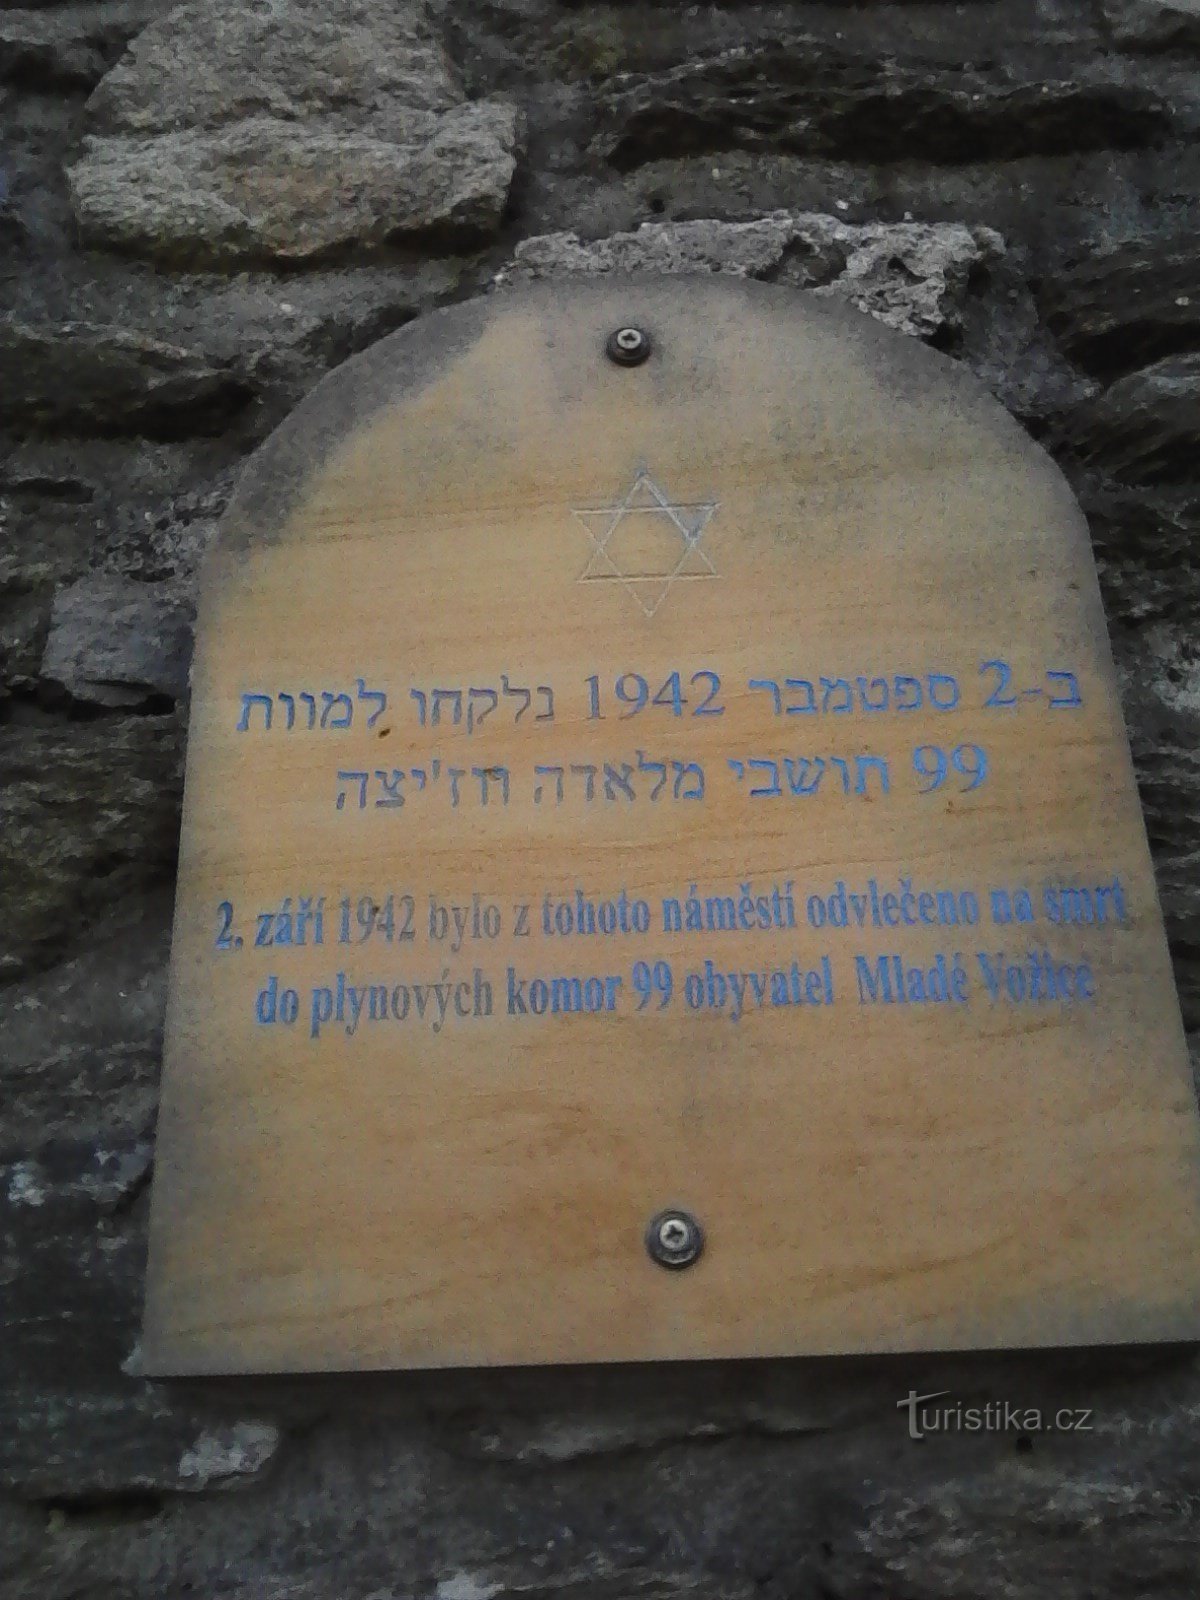 1. Una targa commemorativa degli orrori della guerra sul muro davanti alla chiesa